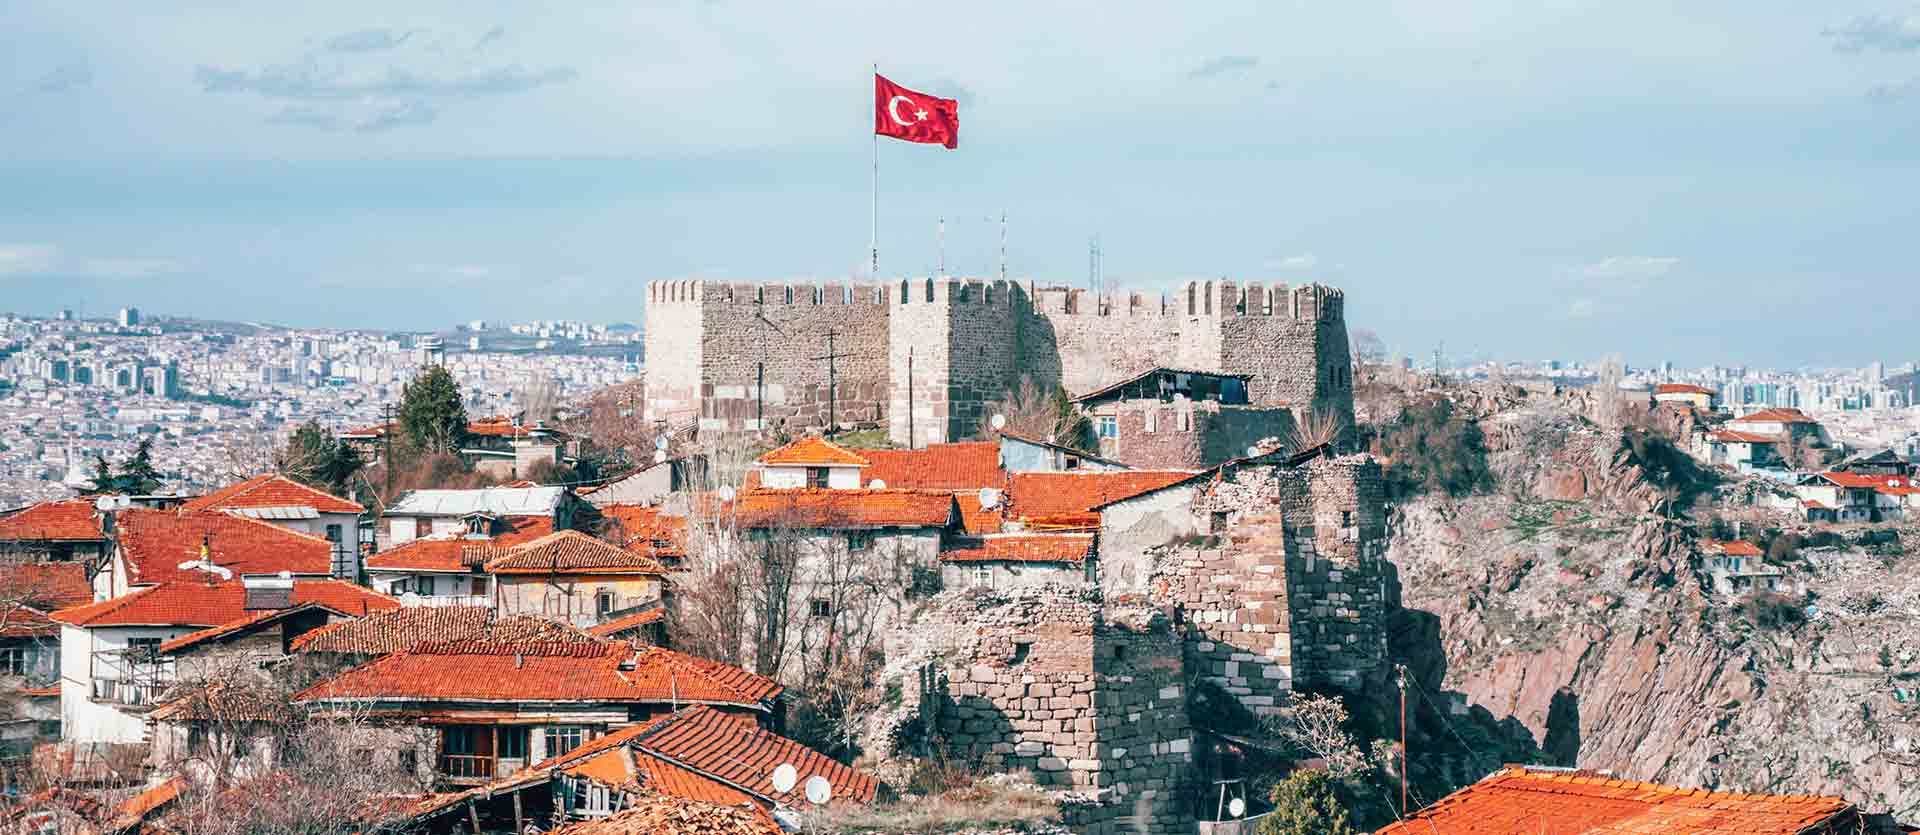 Castillo de Ankara <span class="iconos separador"></span> Turquía